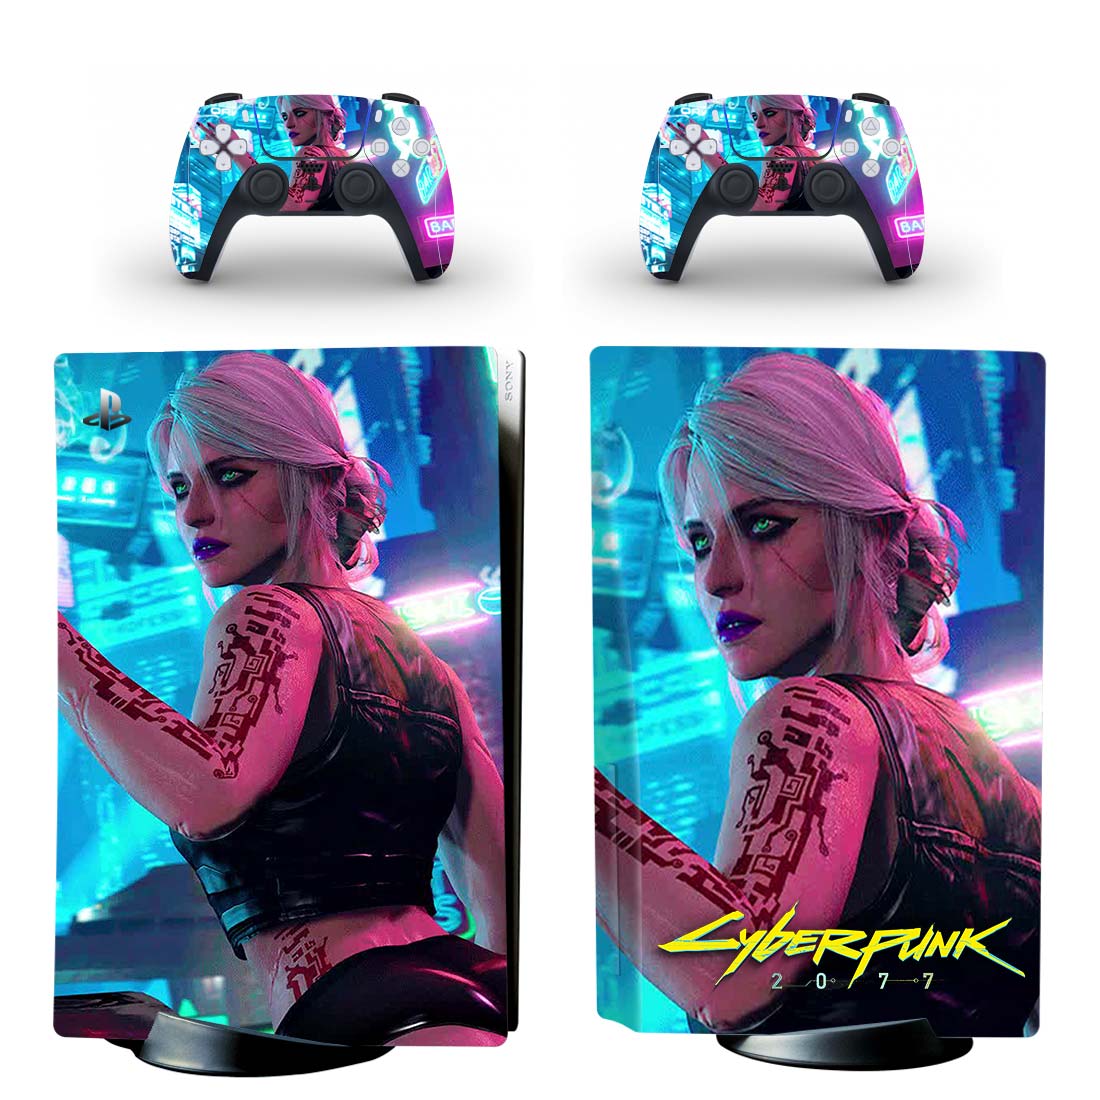 Cyberpunk 2077 PS5 Skin Sticker And Controllers Design 6